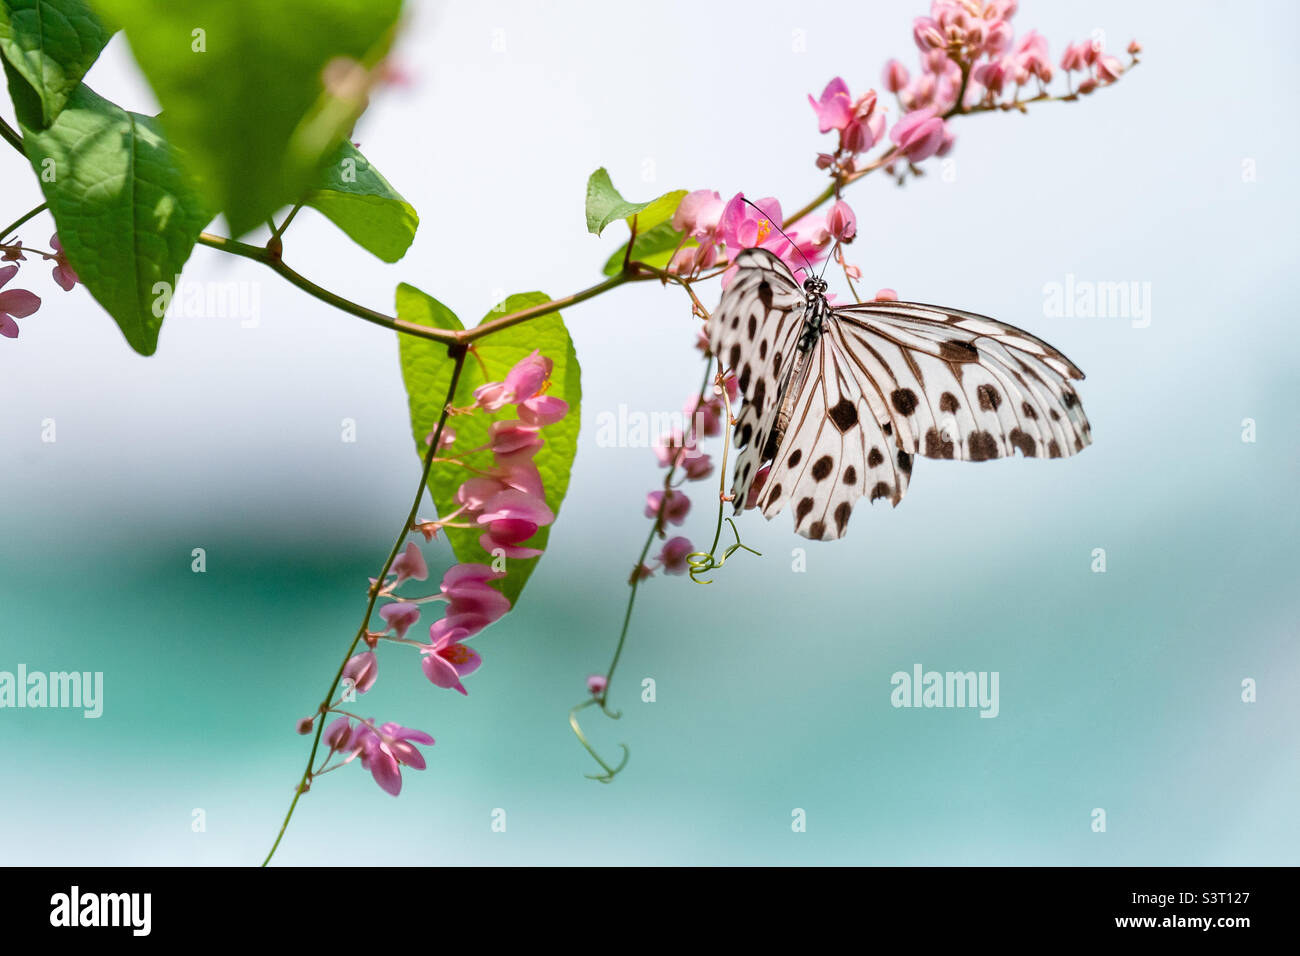 Exotischer Schmetterling mit schwarzen Punkten auf einer grünen Pflanze Stockfoto